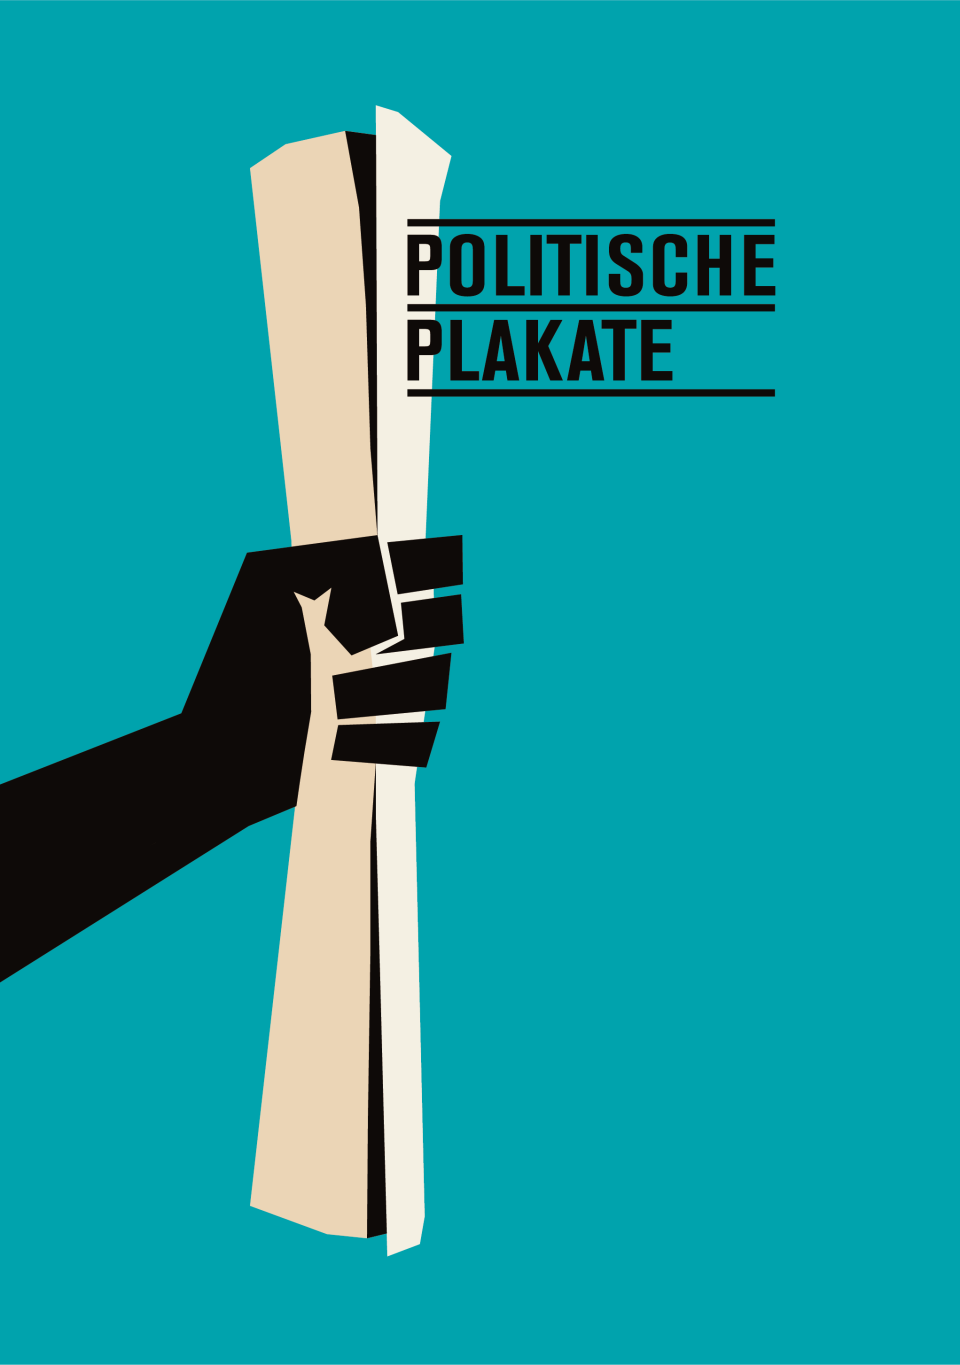 Politische Plakate (1)